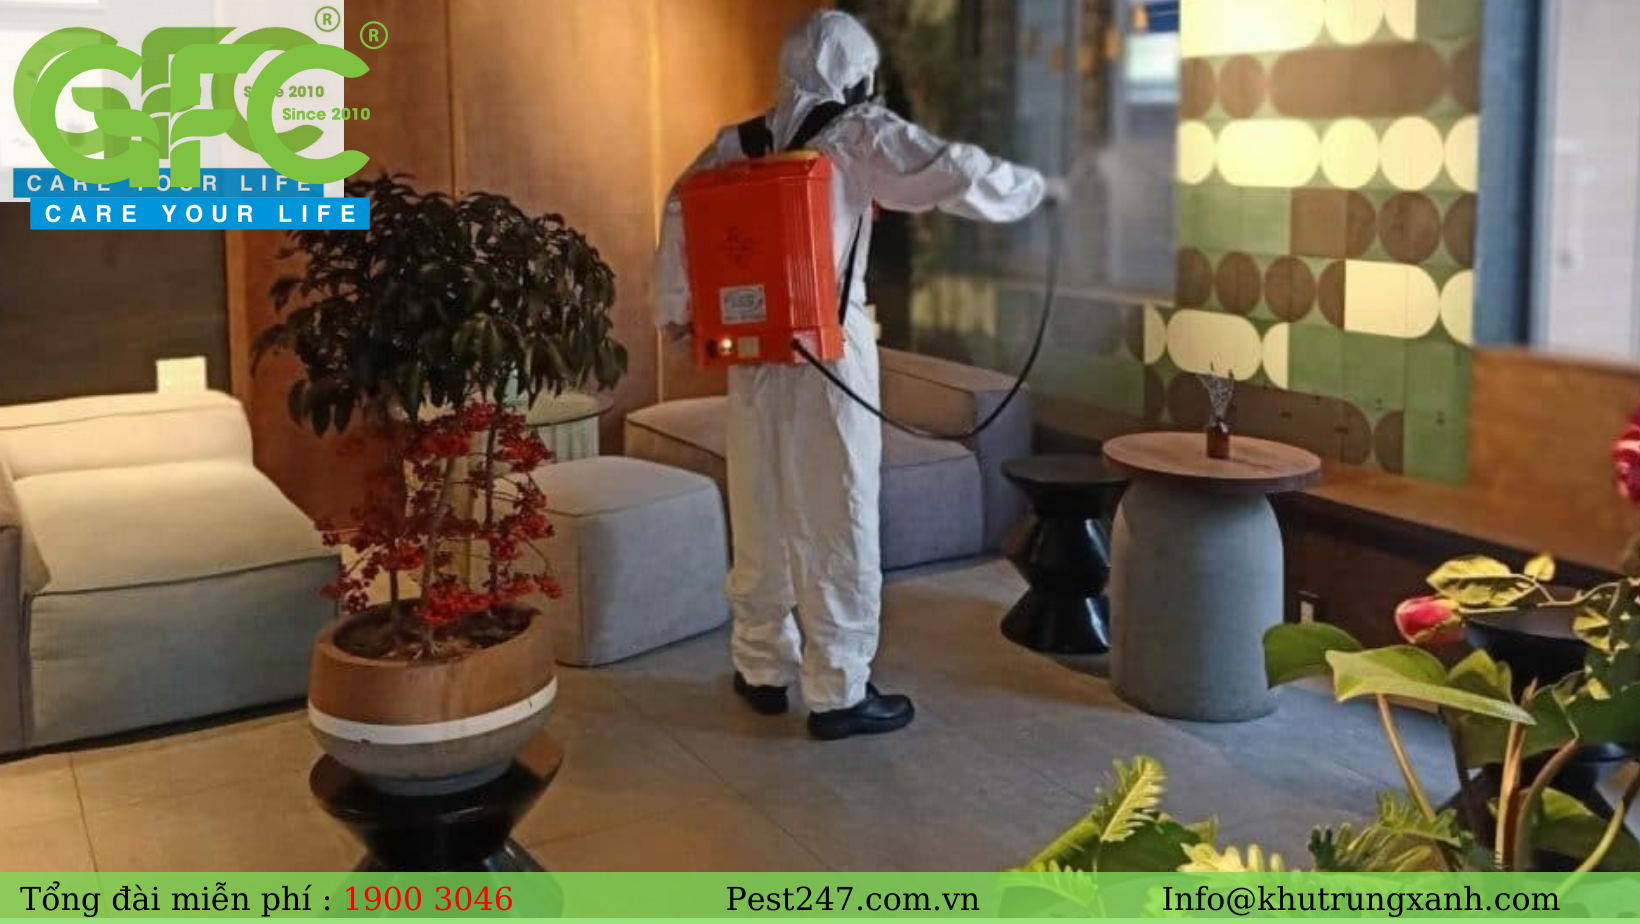 Đội phục vụ của Công ty dịch vụ khử trùng mọt Pest247 – GFC sẽ thực hiện thu dọn xác mọt